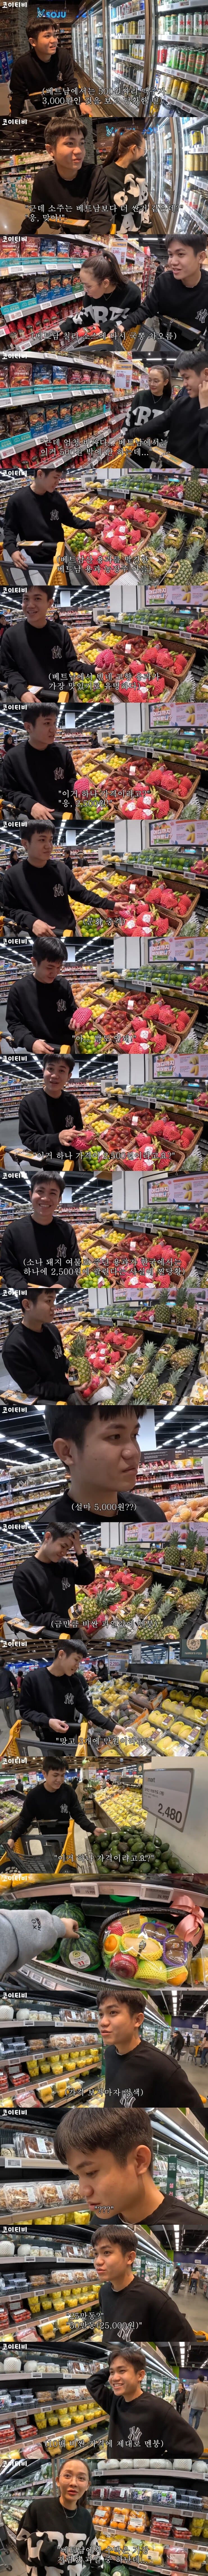 한국 과일 가격에 화들짝 놀란 외국인 - 3